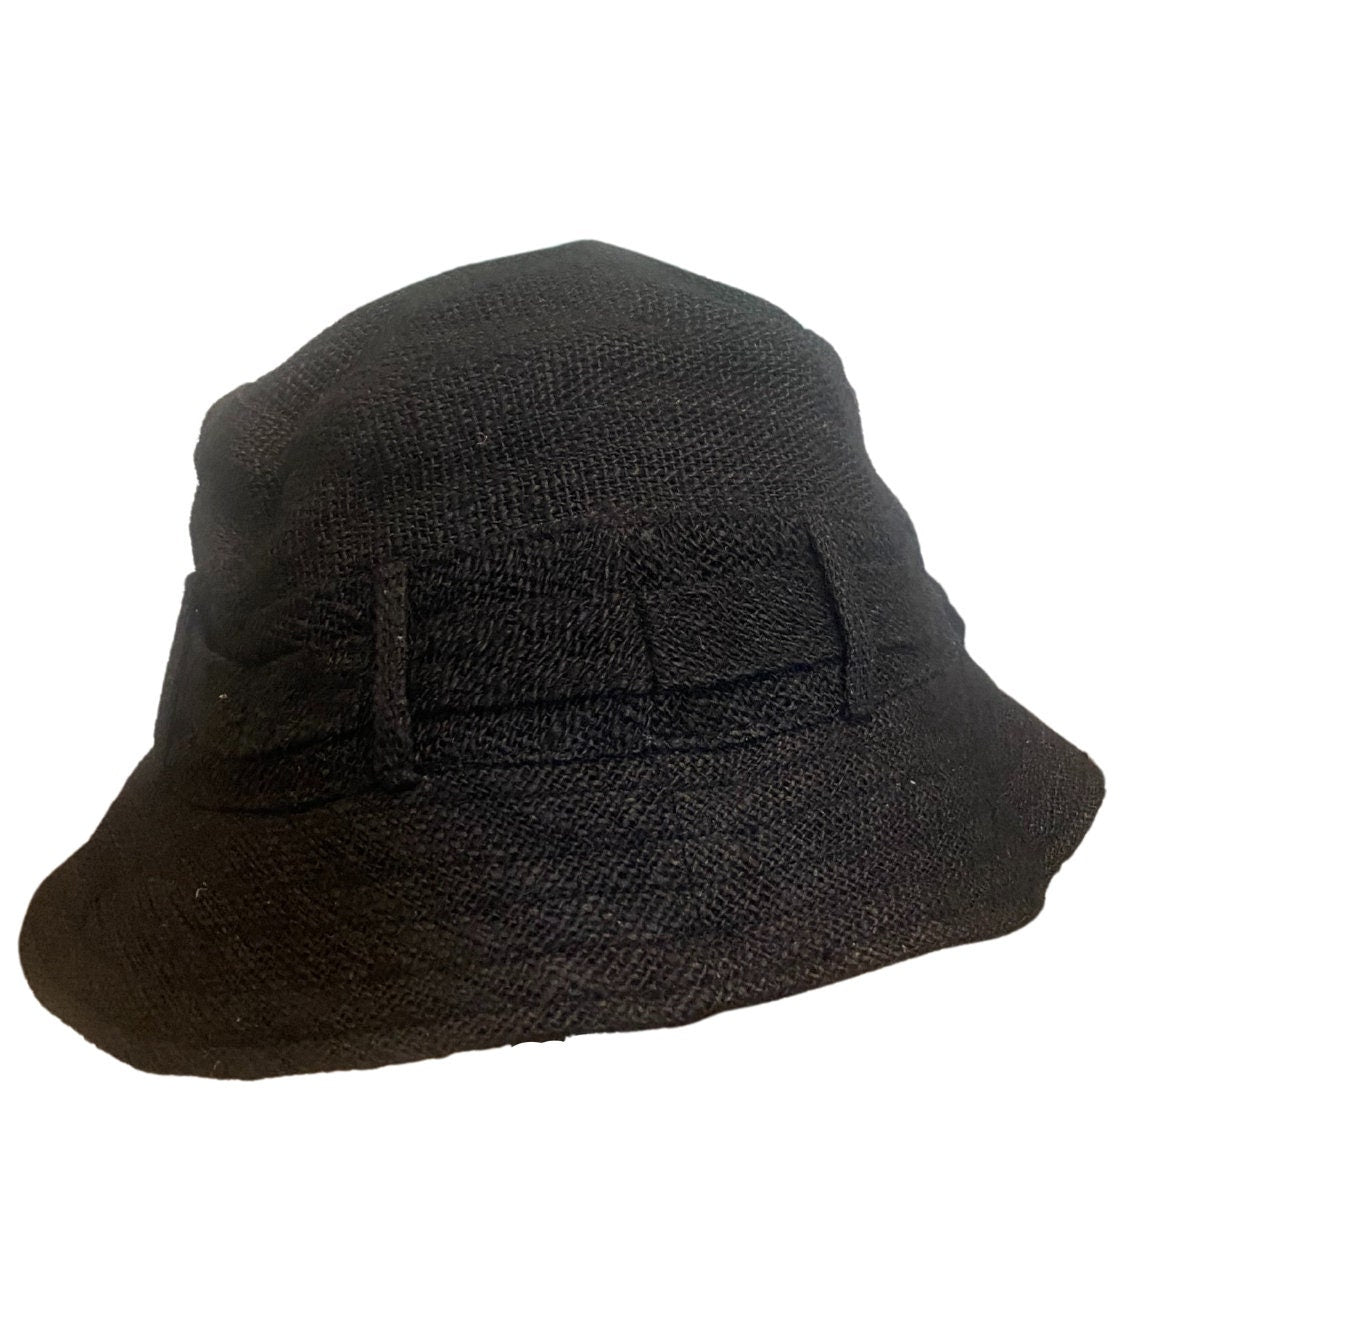 Wild Nettle Black Bucket Hat - Unisex - Summer hat